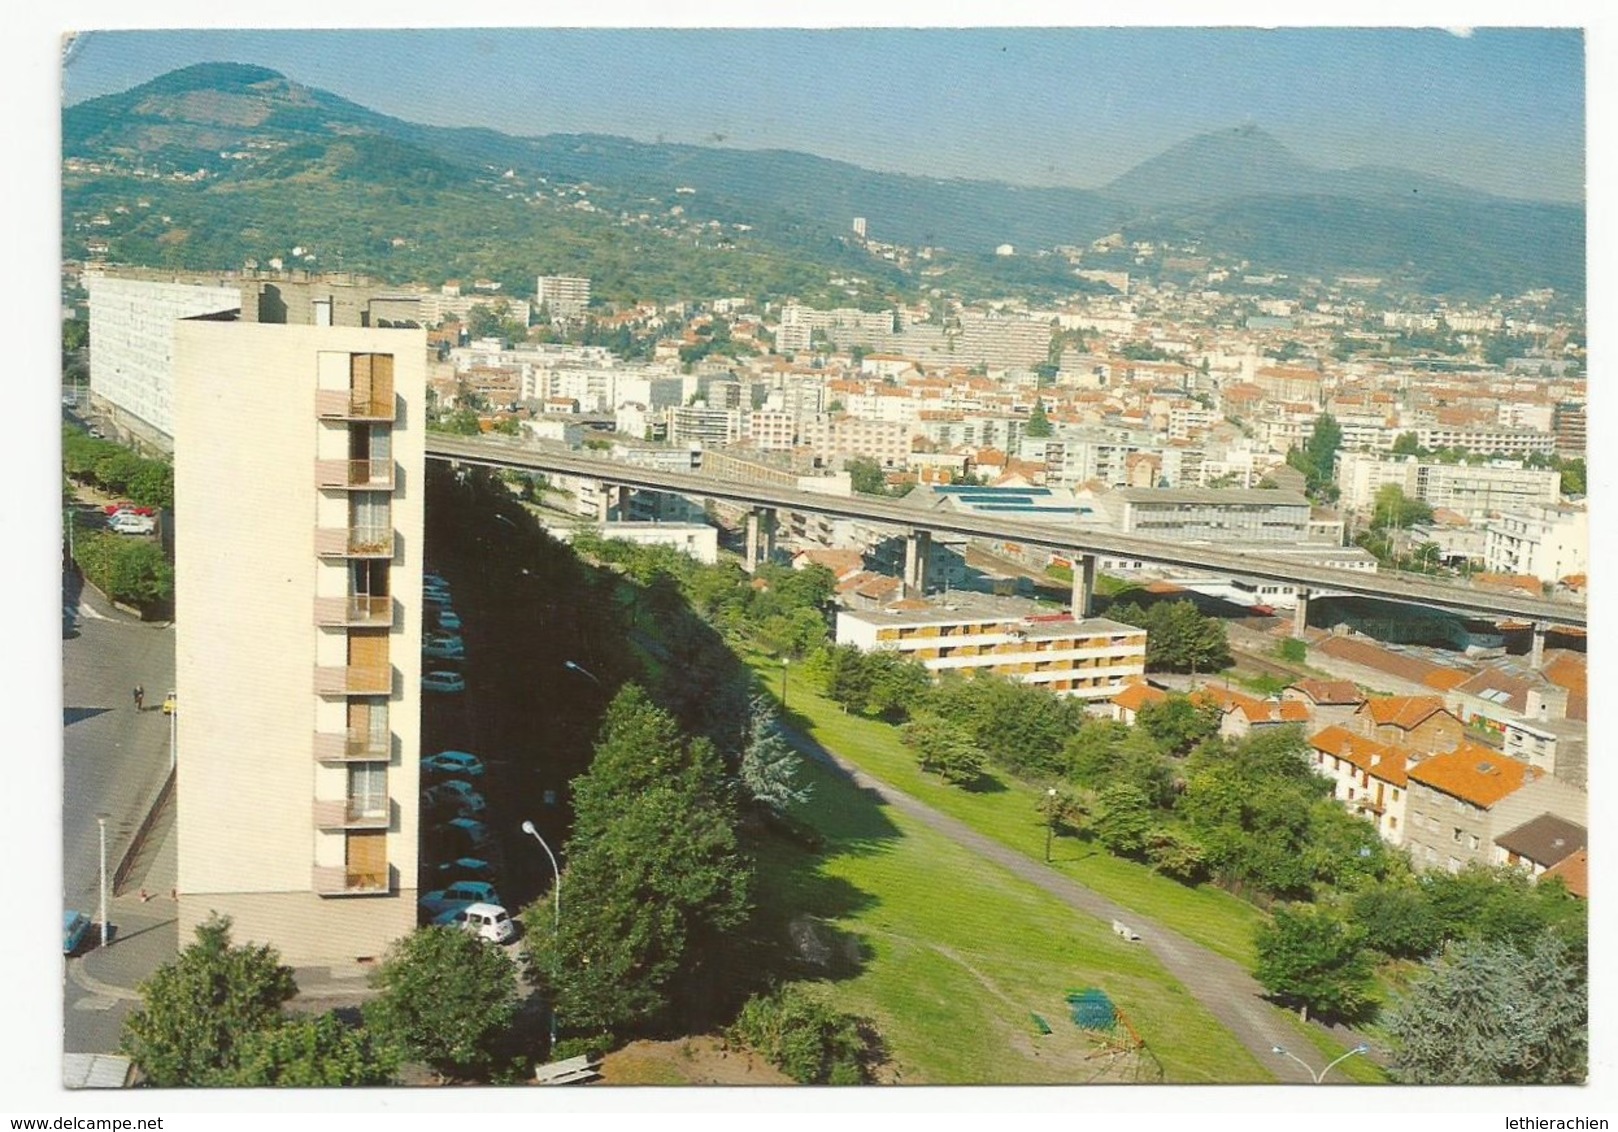 Le Viaduc - Clermont Ferrand